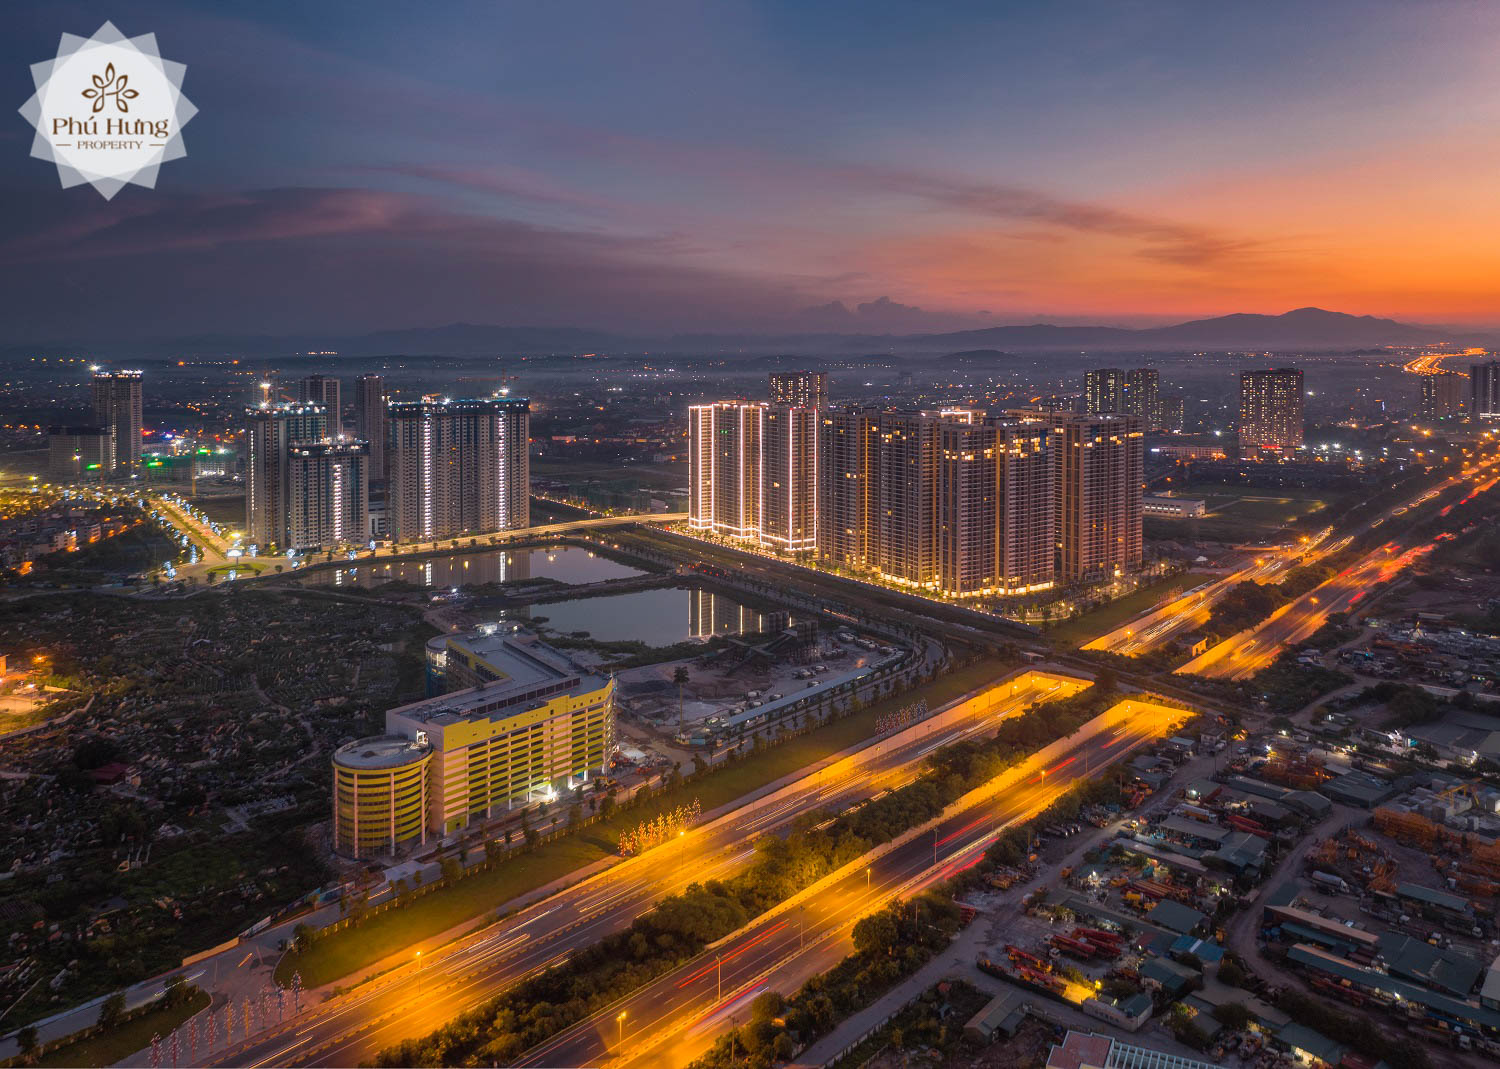 Vị trí đắc địa, tiện ích đầy đủ và chính sách bán hàng hấp dẫn khiến Vinhomes Smart City trở thành dự án hấp dẫn nhất thị trường BĐS phía Tây Hà Nội đầu năm 2021